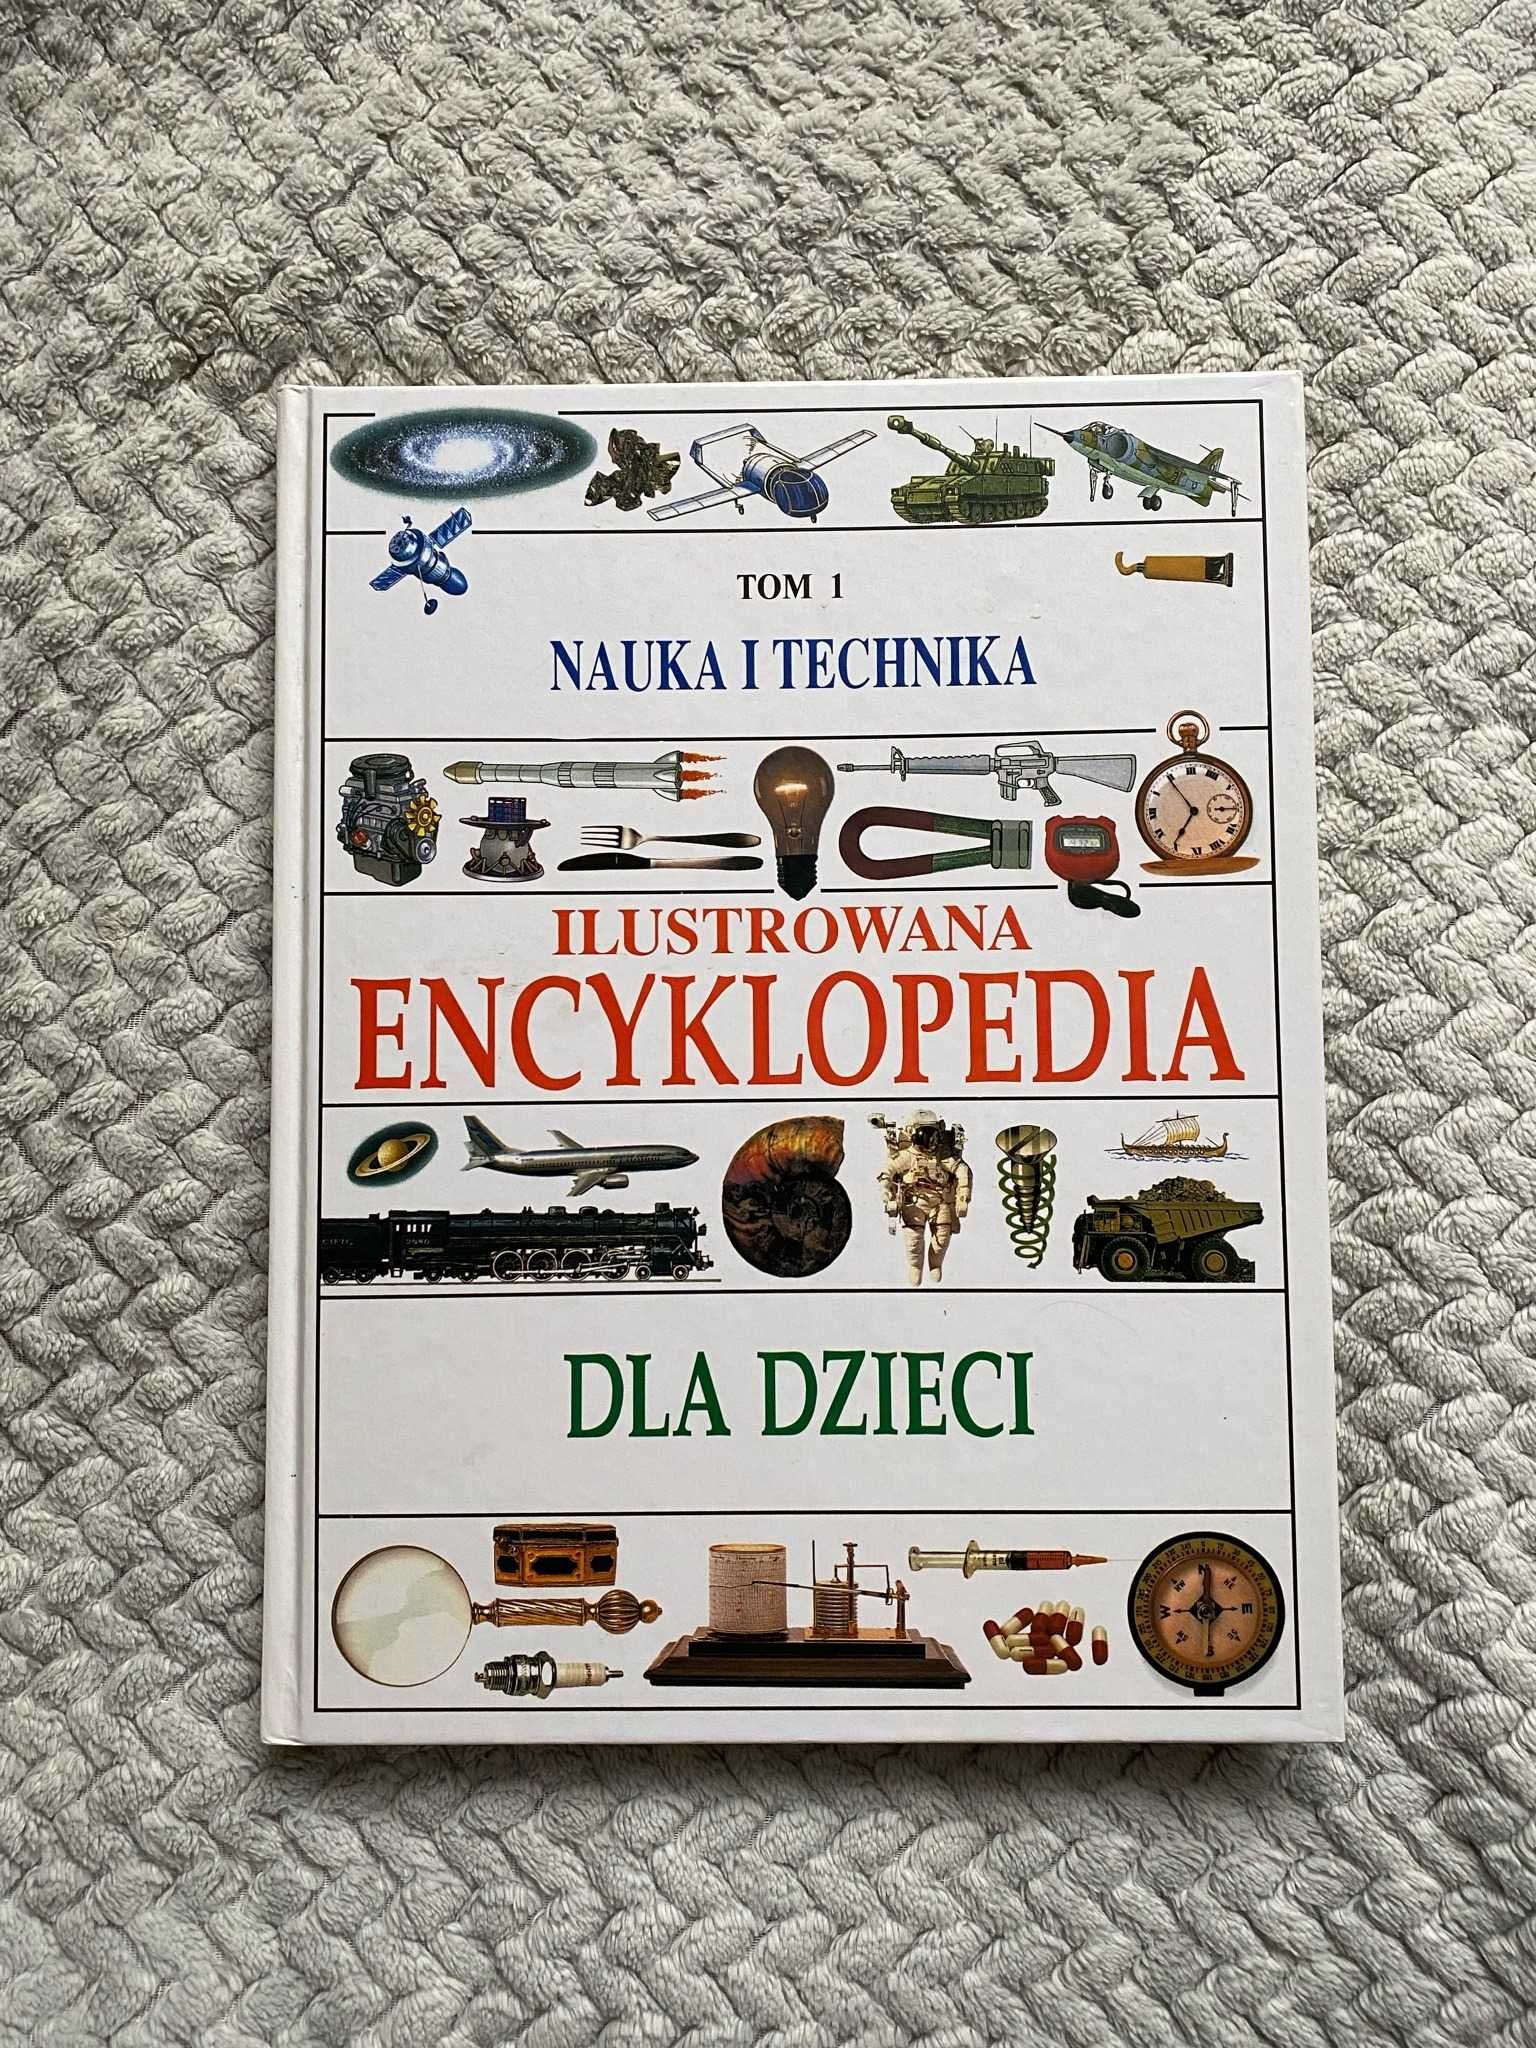 Ilustrowana Encyklopedia dla dzieci, Tom 1.